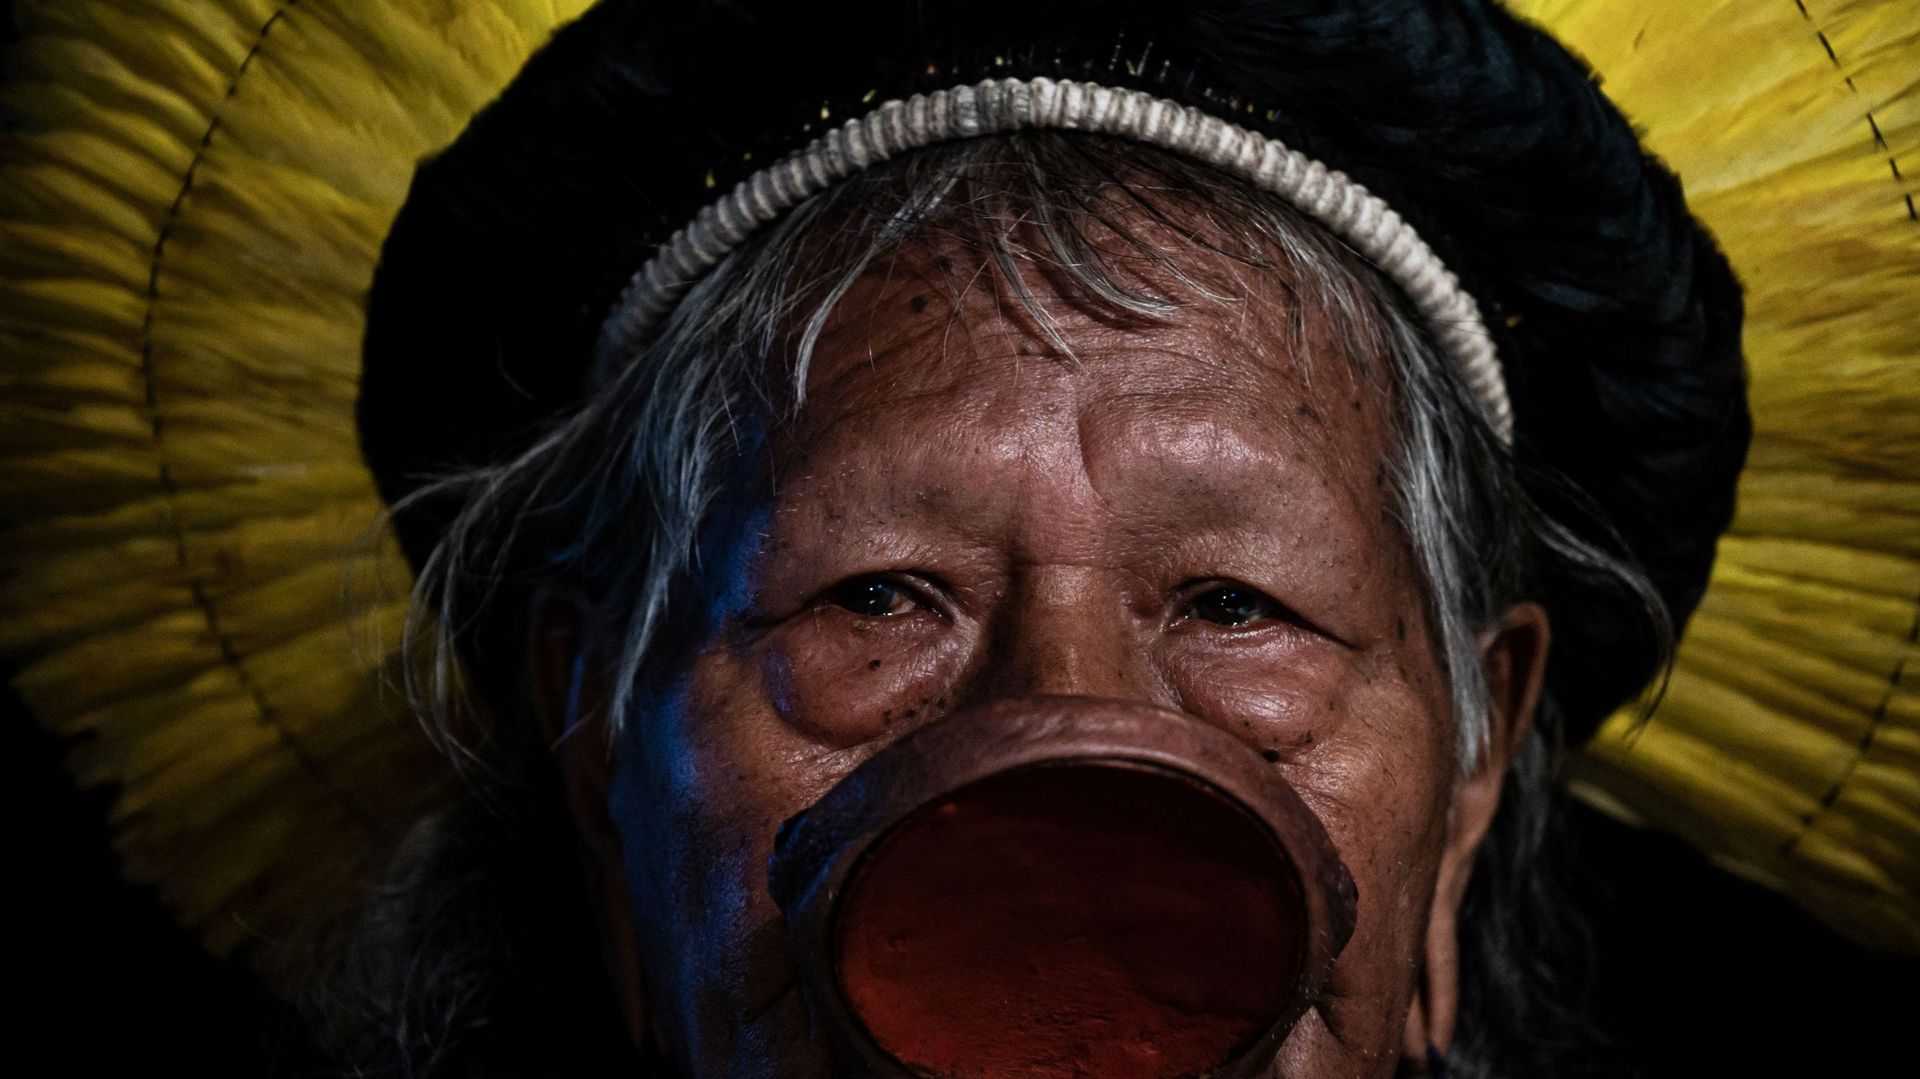 Le chef indien brésilien, de la tribu kayapo, Raoni Metuktire, est la grande figure de la lutte contre la déforestation en Amazonie.